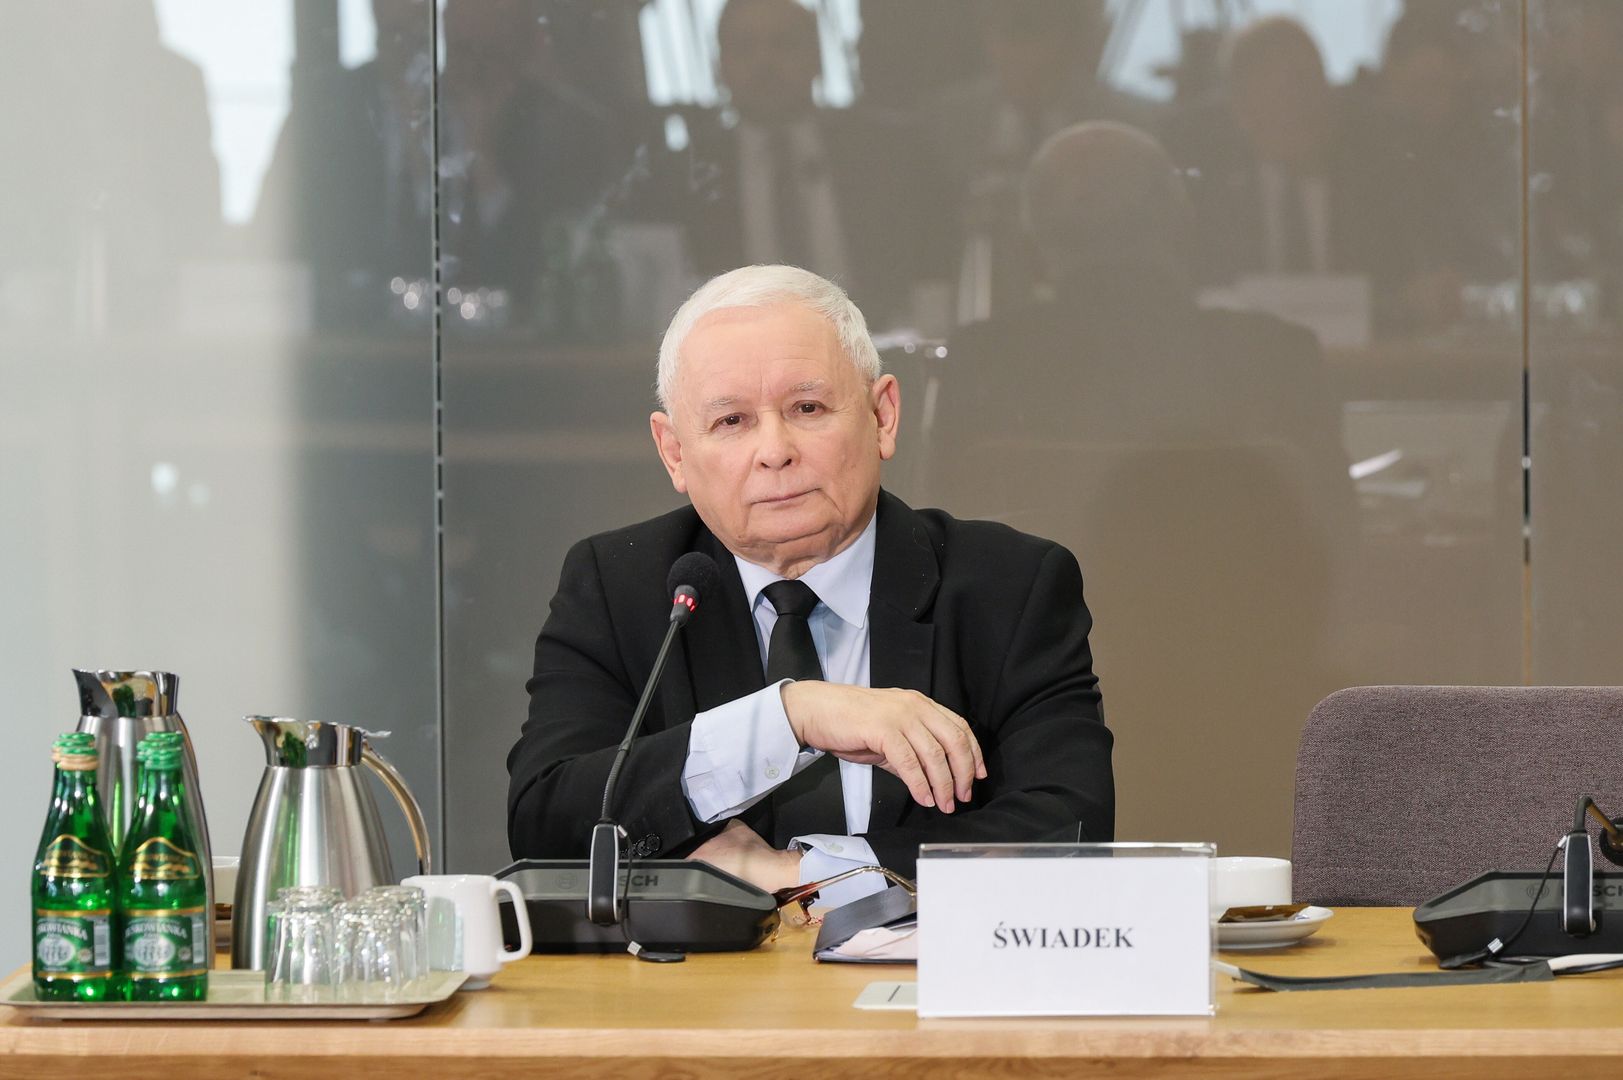 Fala komentarzy po ślubowaniu prezesa. "Kaczyński, dr prawa, nie rozumie"